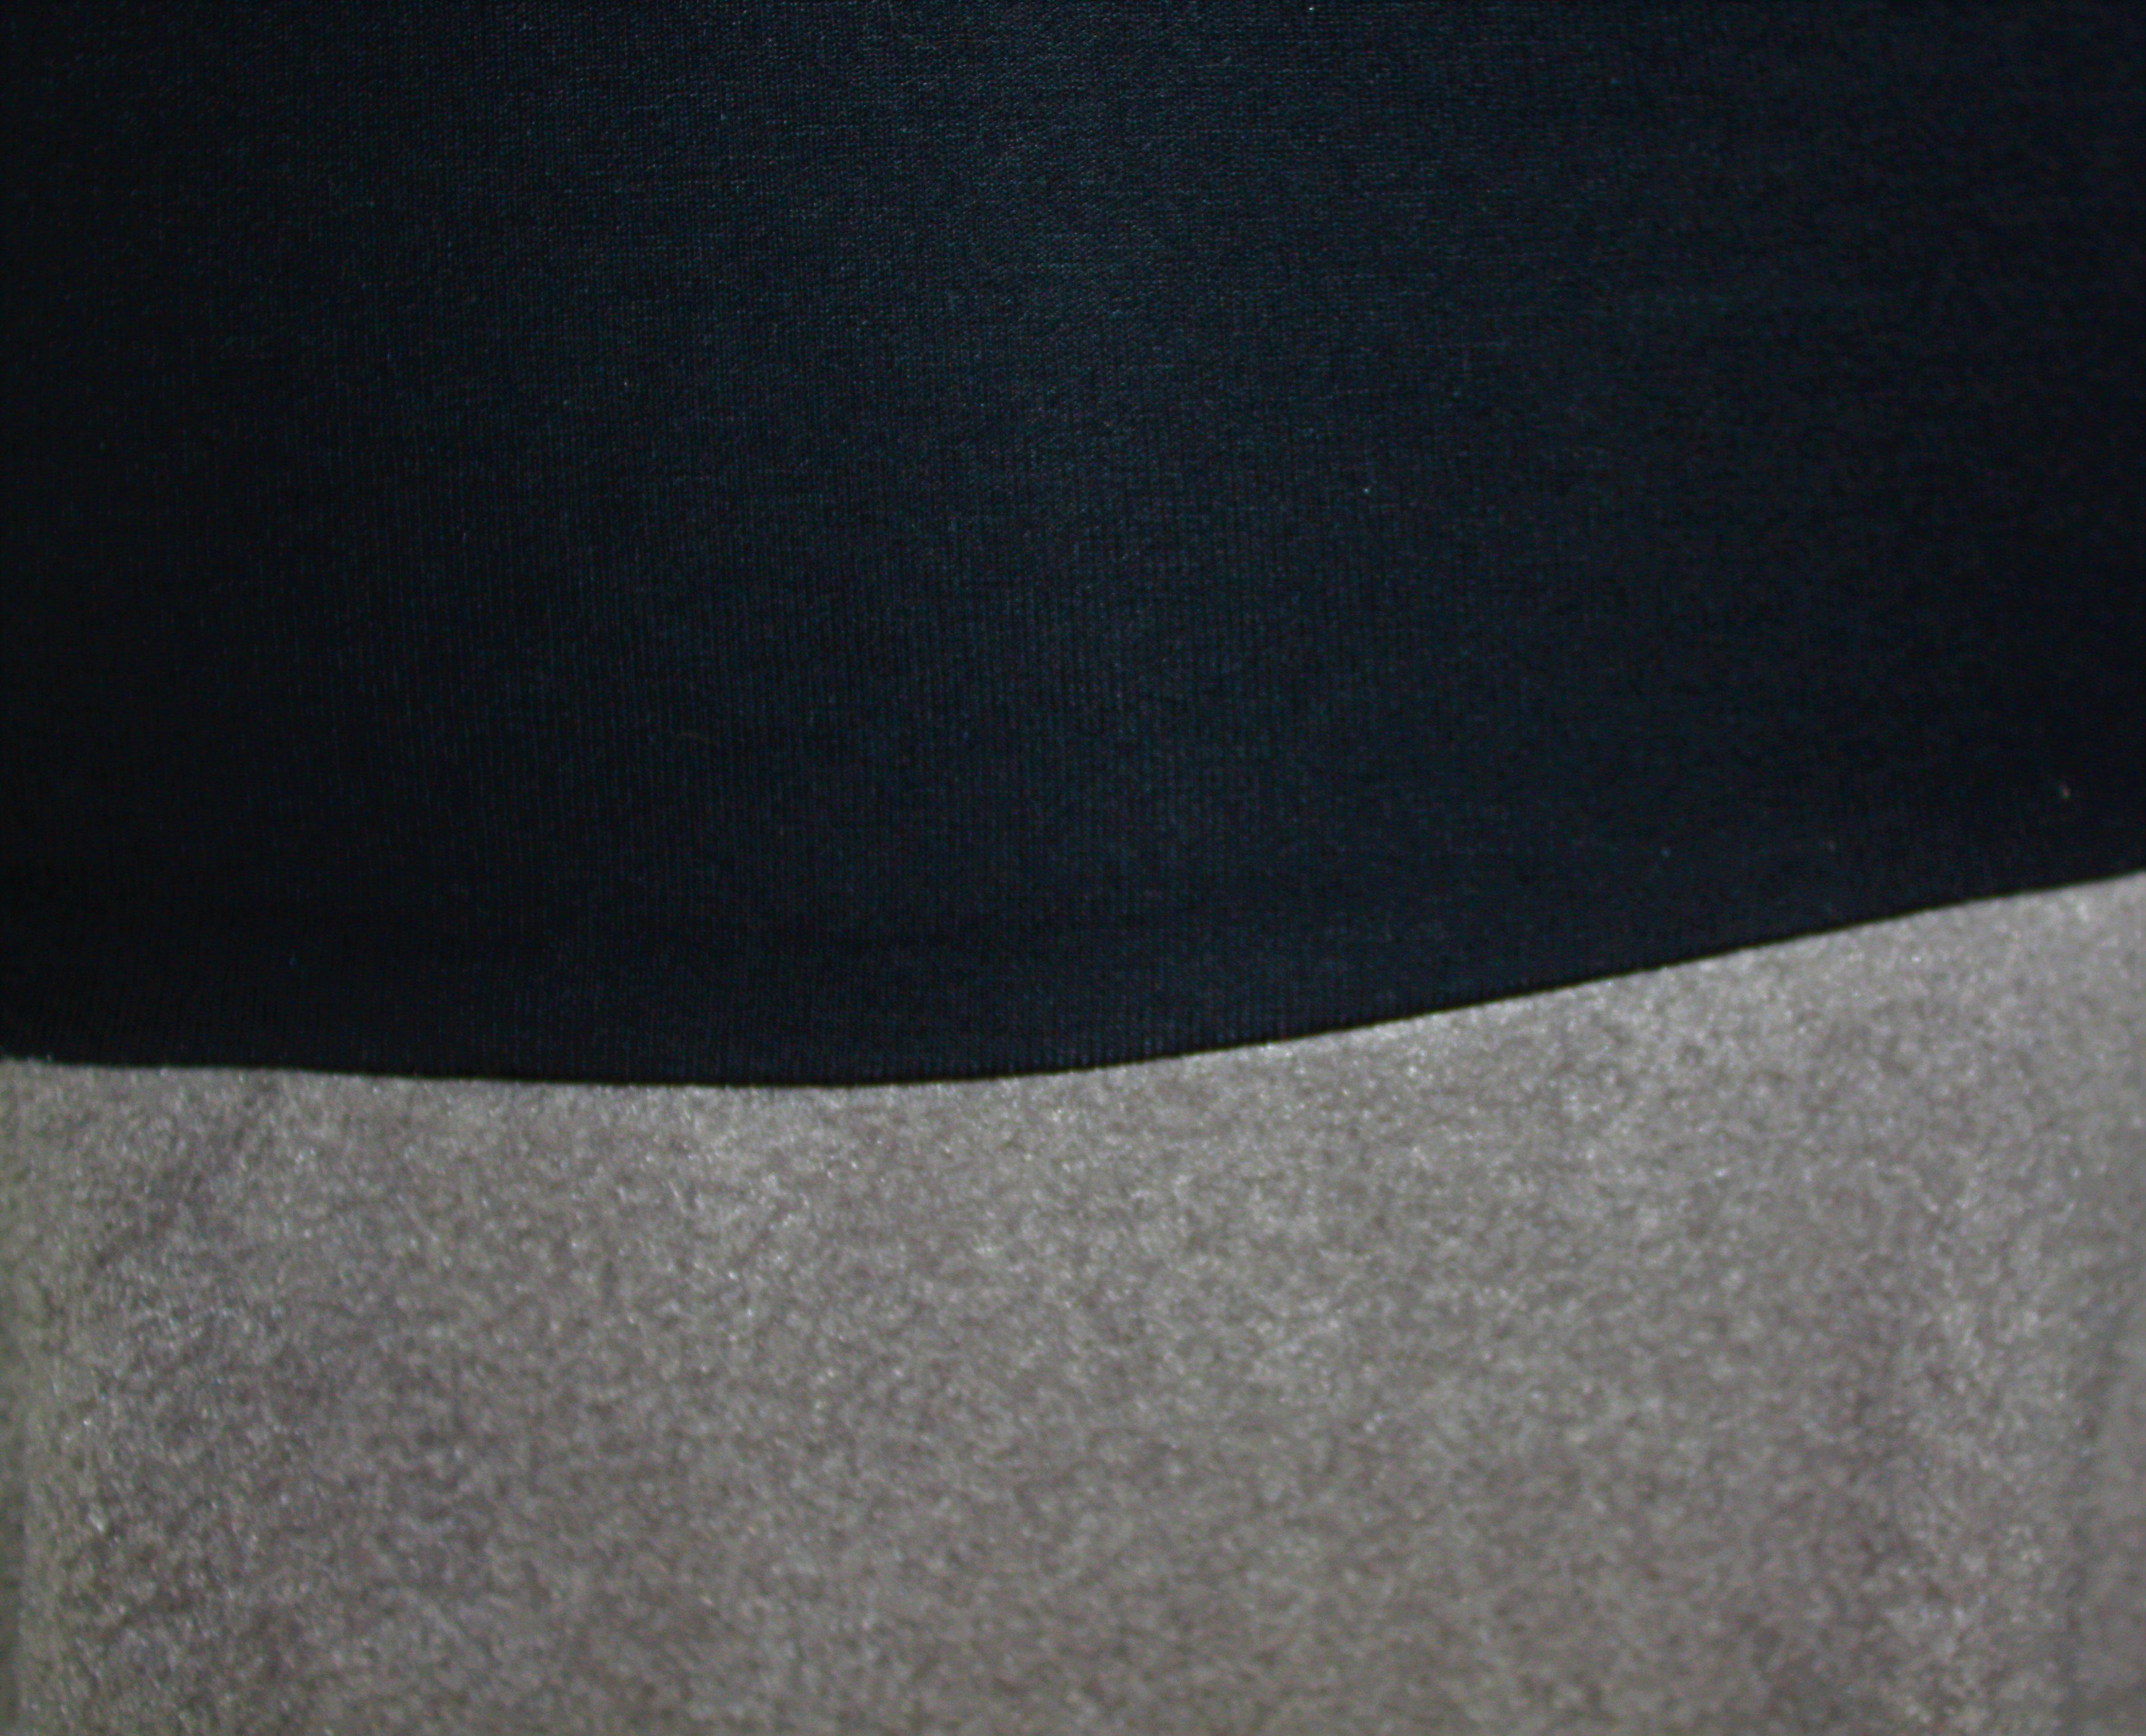 Grau A-Linien-Rock 57cm Bund elastischer BUnd Schwarz design dunkle Fleece